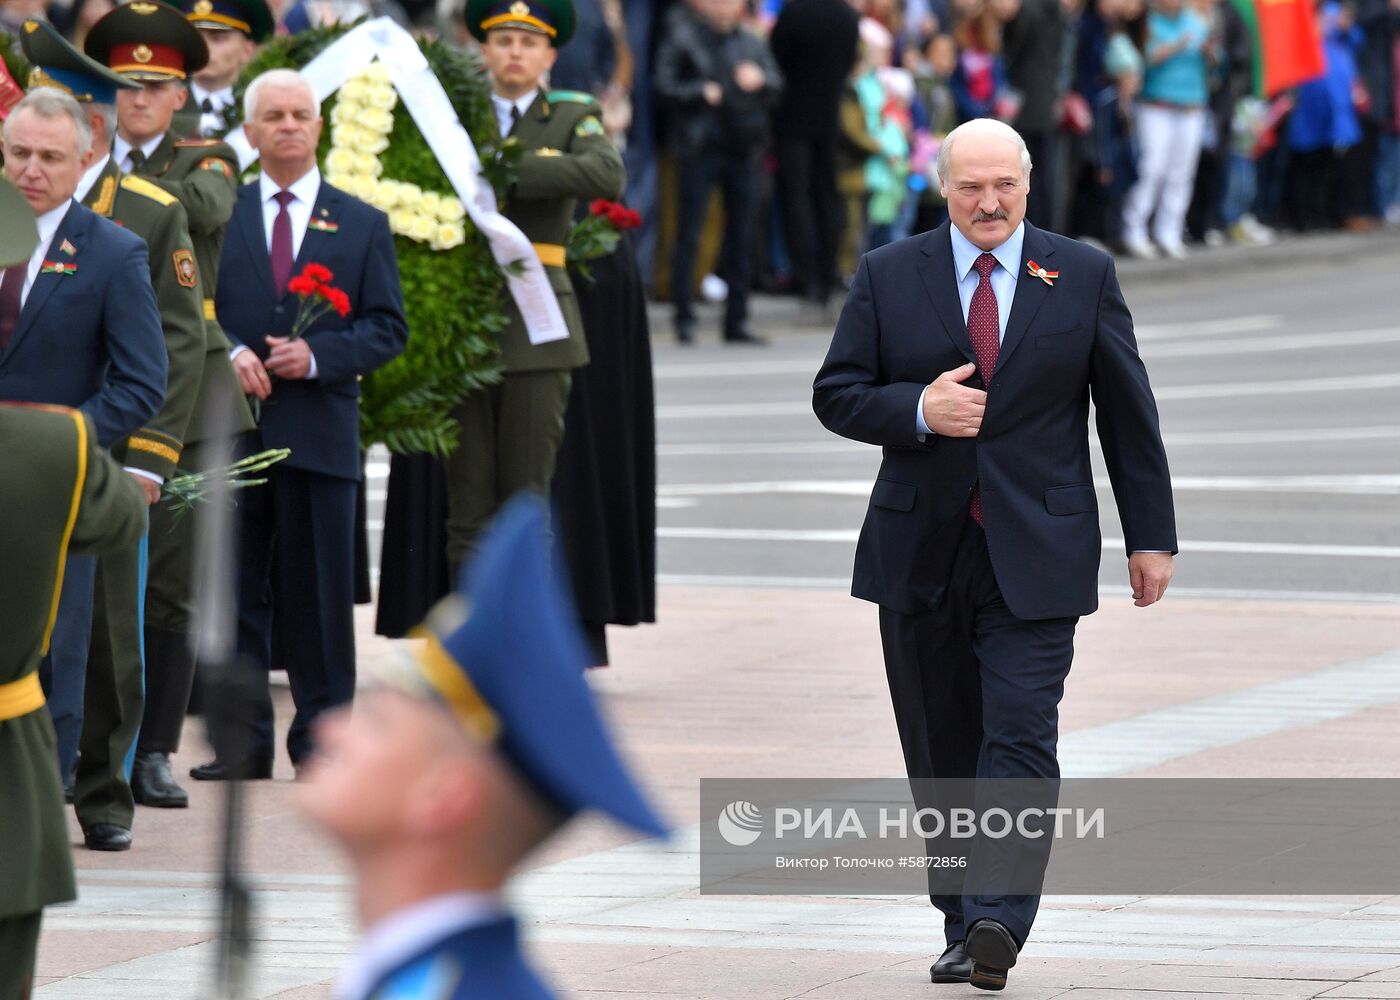 Президент Белоруссии А. Лукашенко возложил венок к монументу Победы